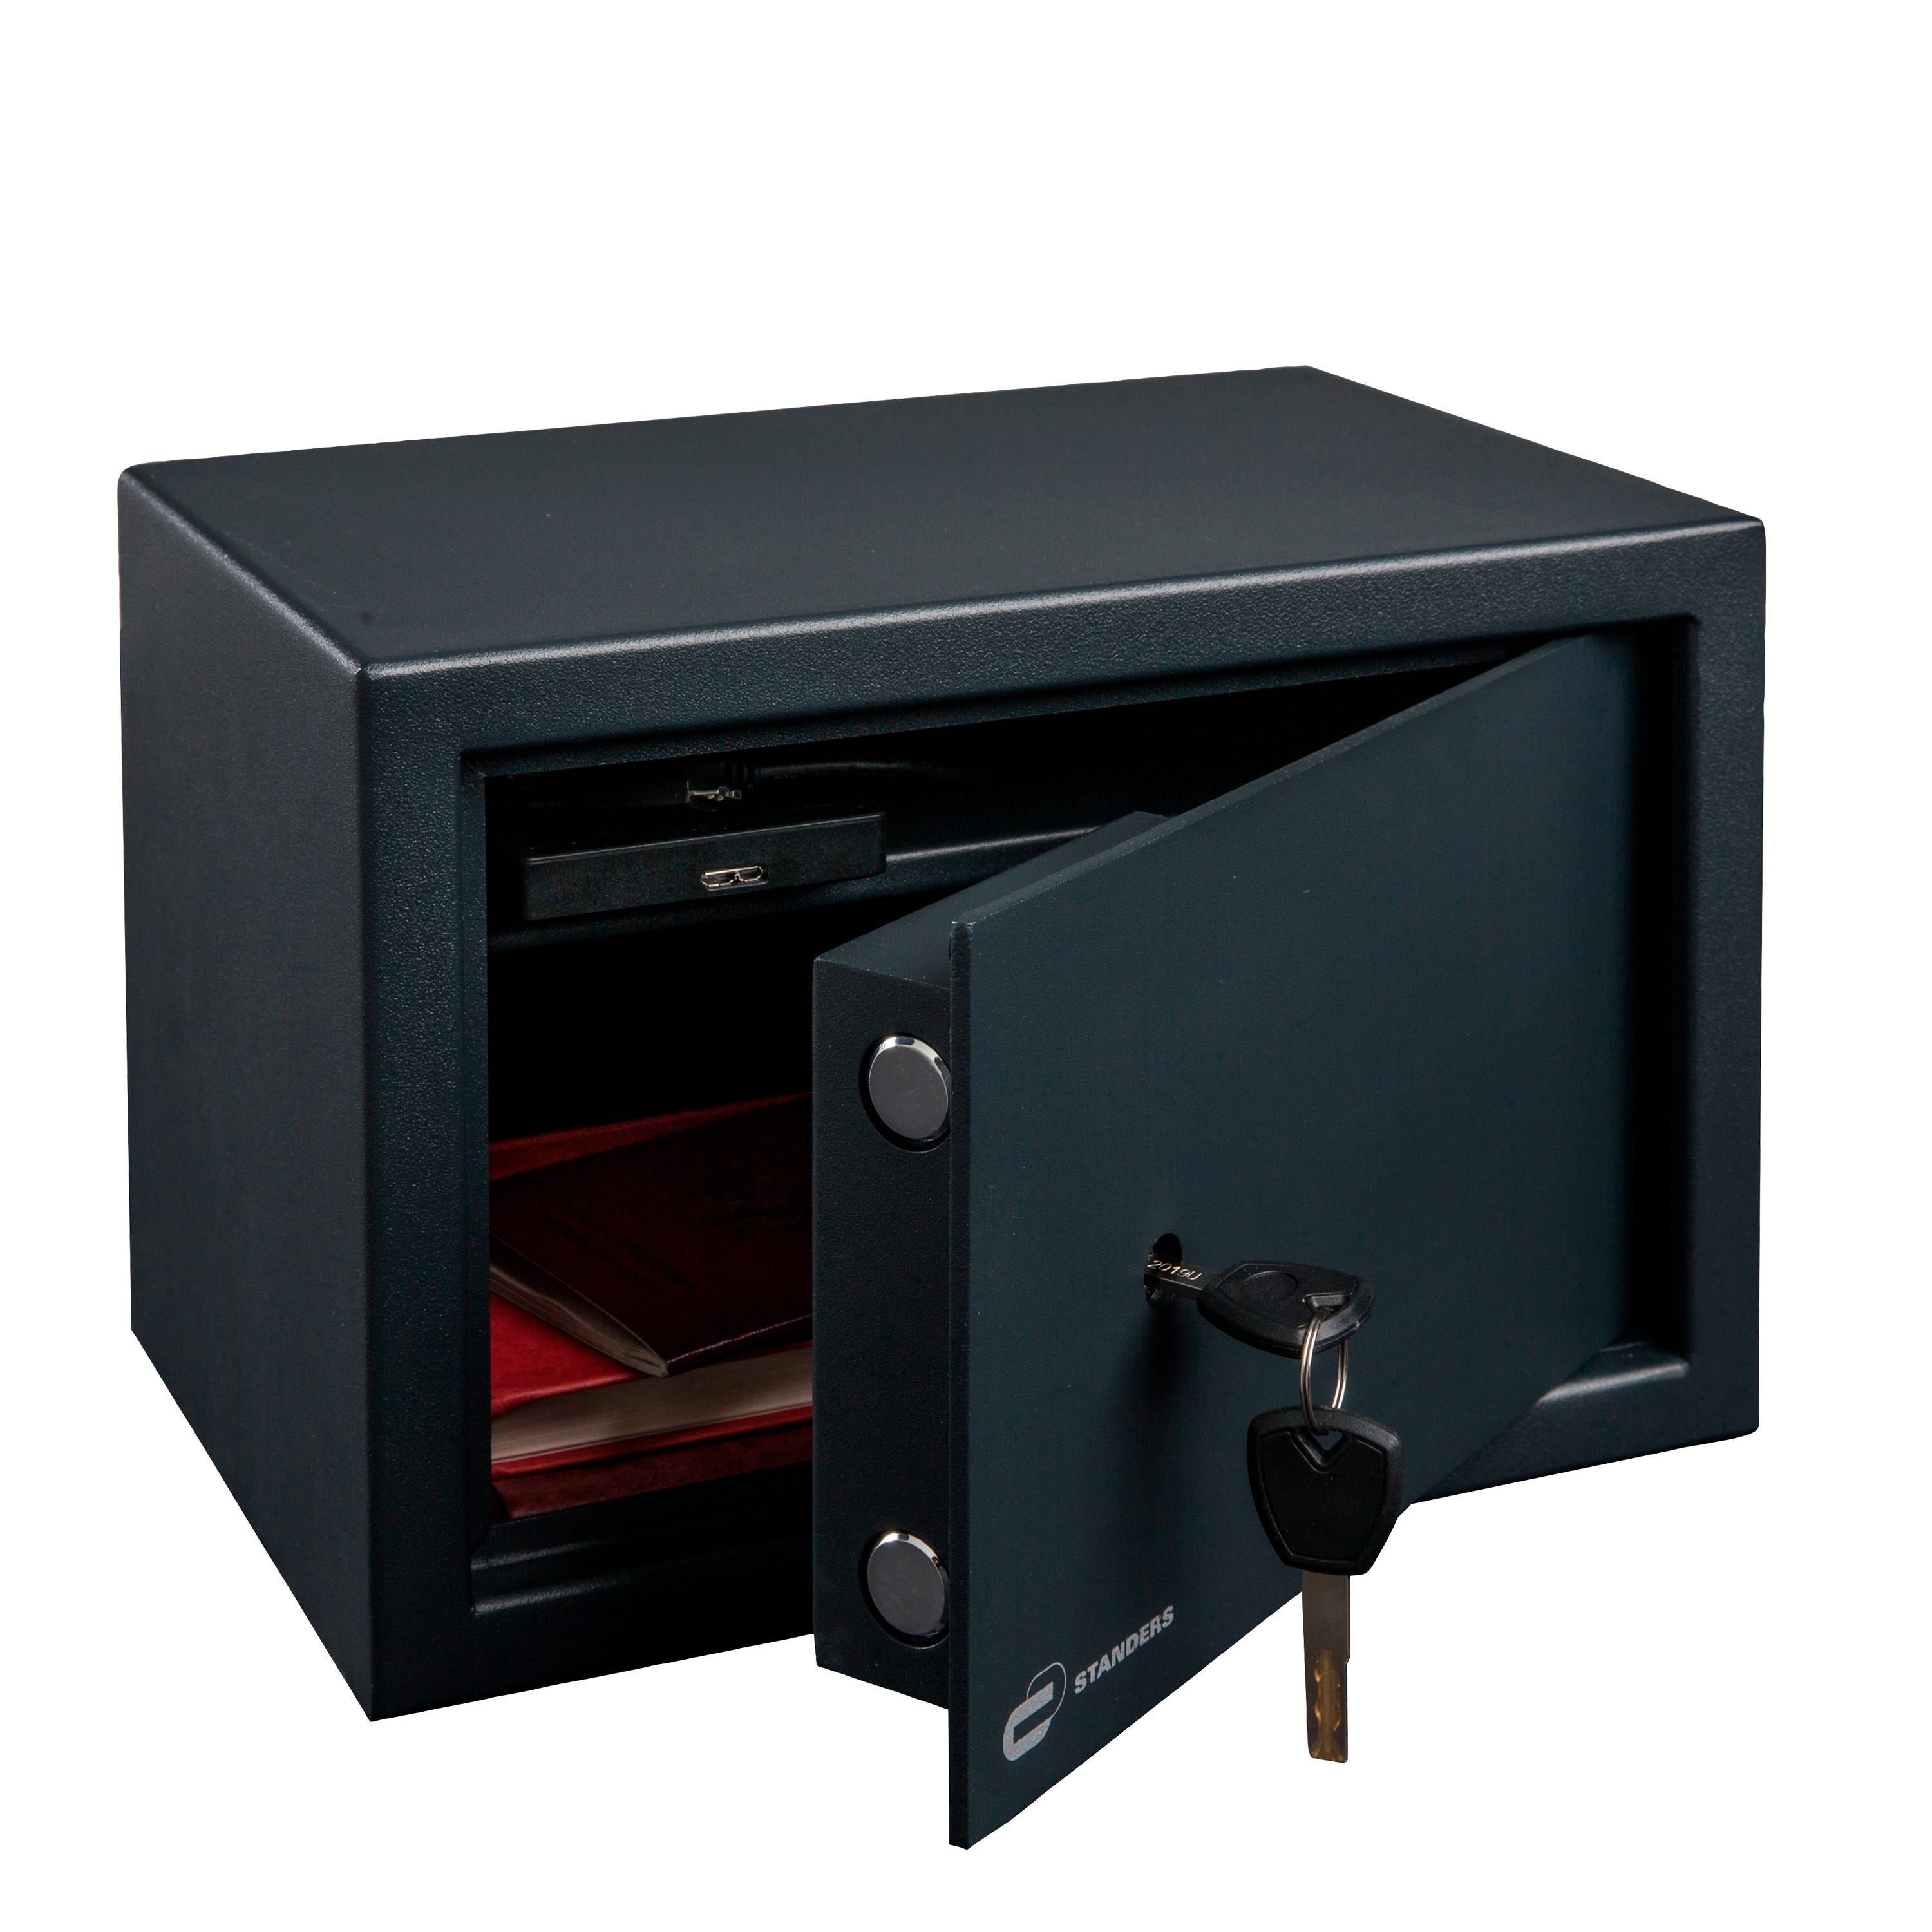 ARREGUI Class T17K Caja Fuerte de Acero con Cerradura de Llave, Caja de  Seguridad para Casa y Hogar, Fácil de Usar y de Instalar, 17 x 23 x 17 cm,  4 L